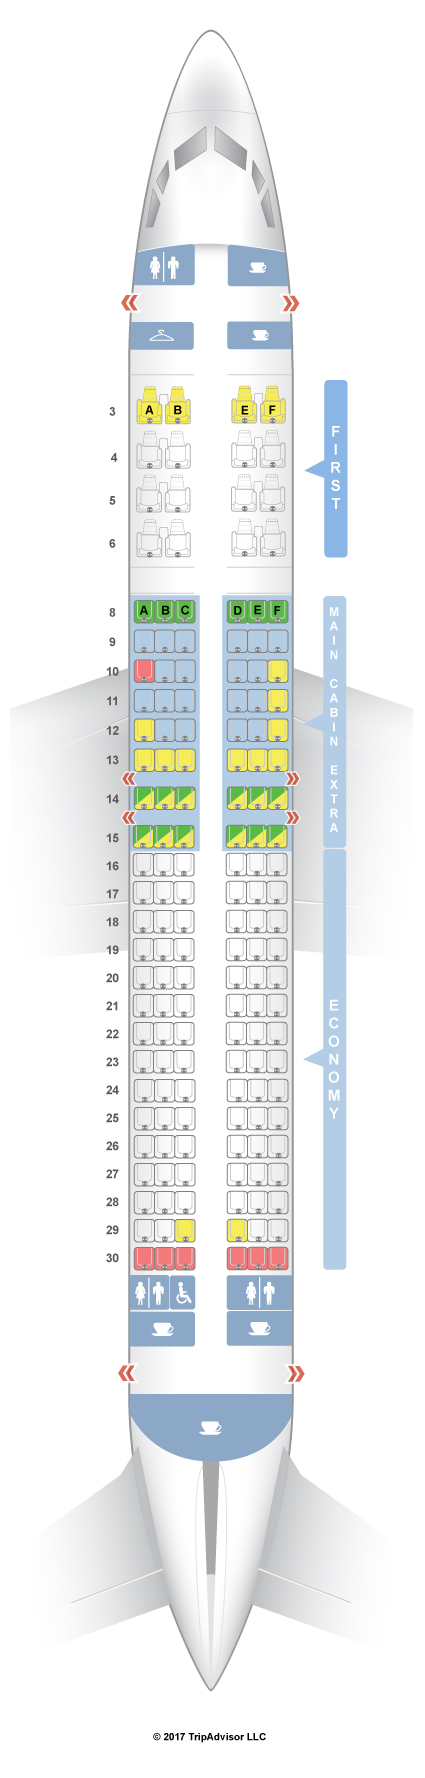 SeatGuru Seat Map American Airlines - SeatGuru